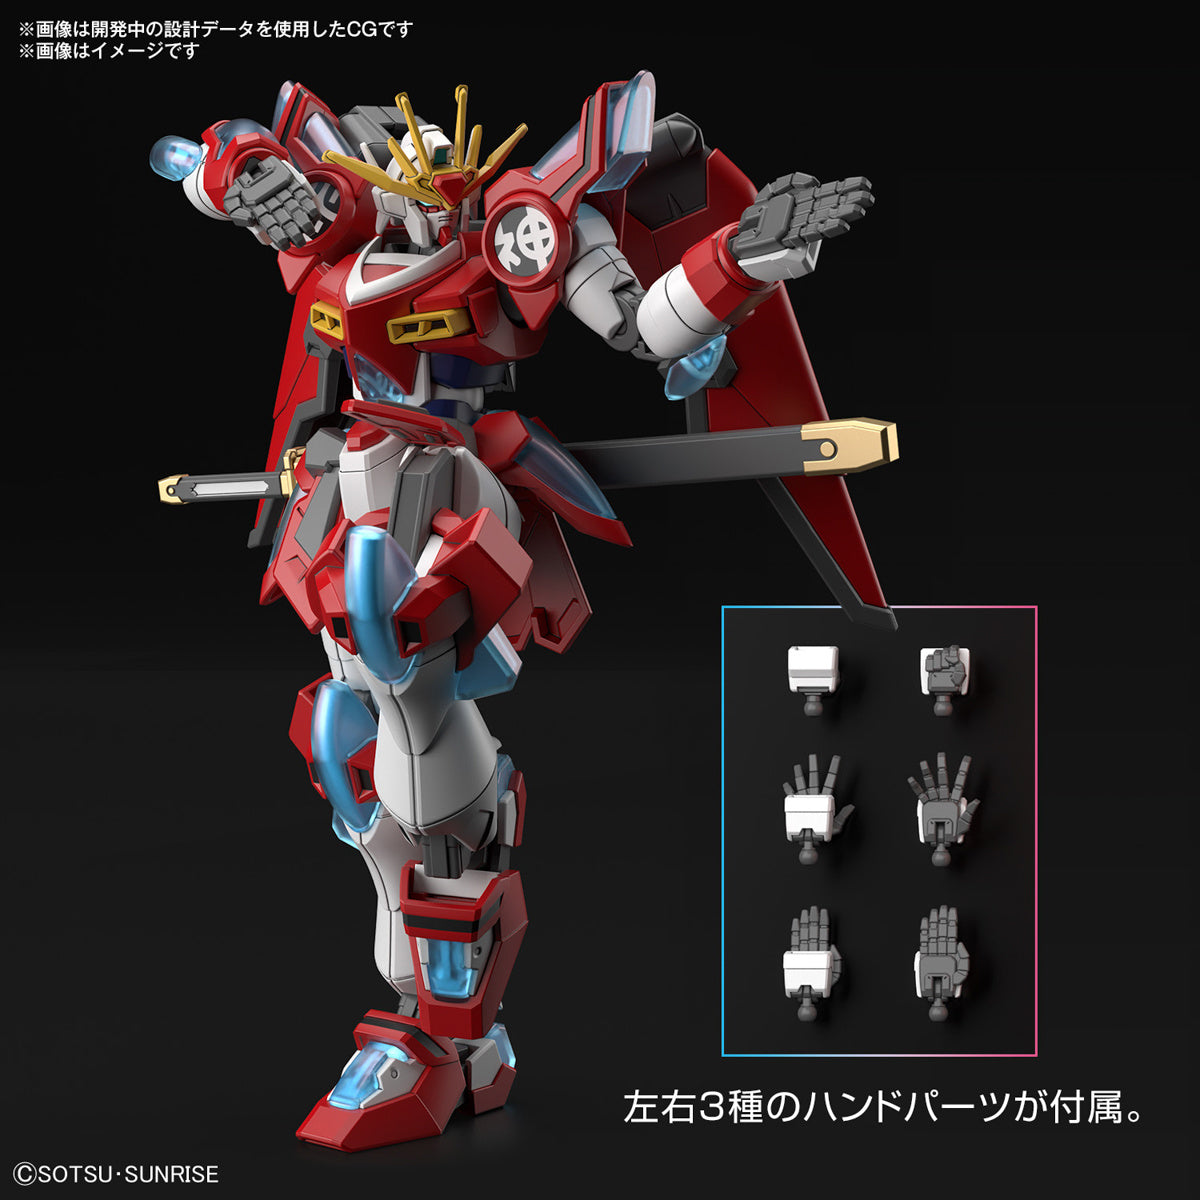 Bandai 1/144 HG Shin Burning Gundam (Gundam Build Metaverse)